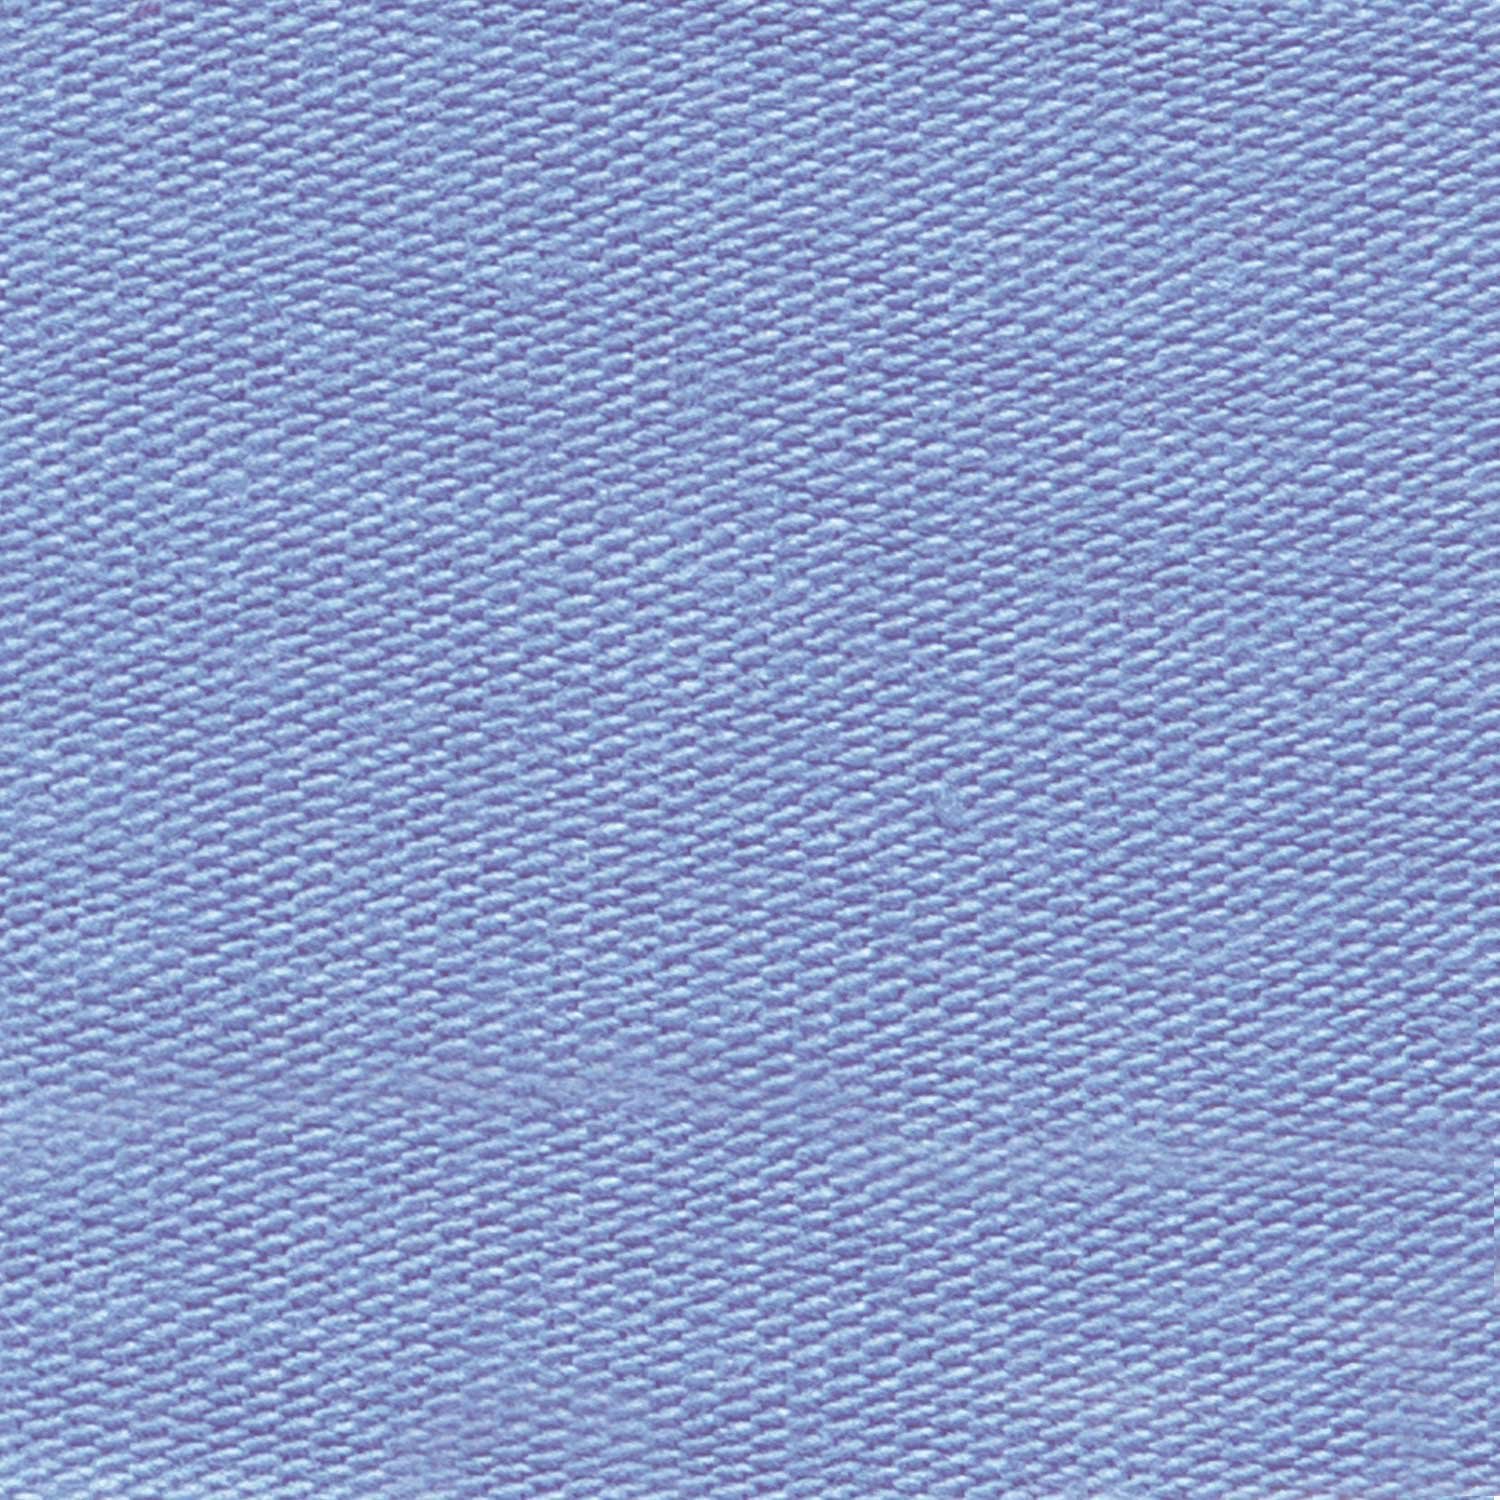 js24-jersey-solid-colors-lavender-2117-24-katia-fhd